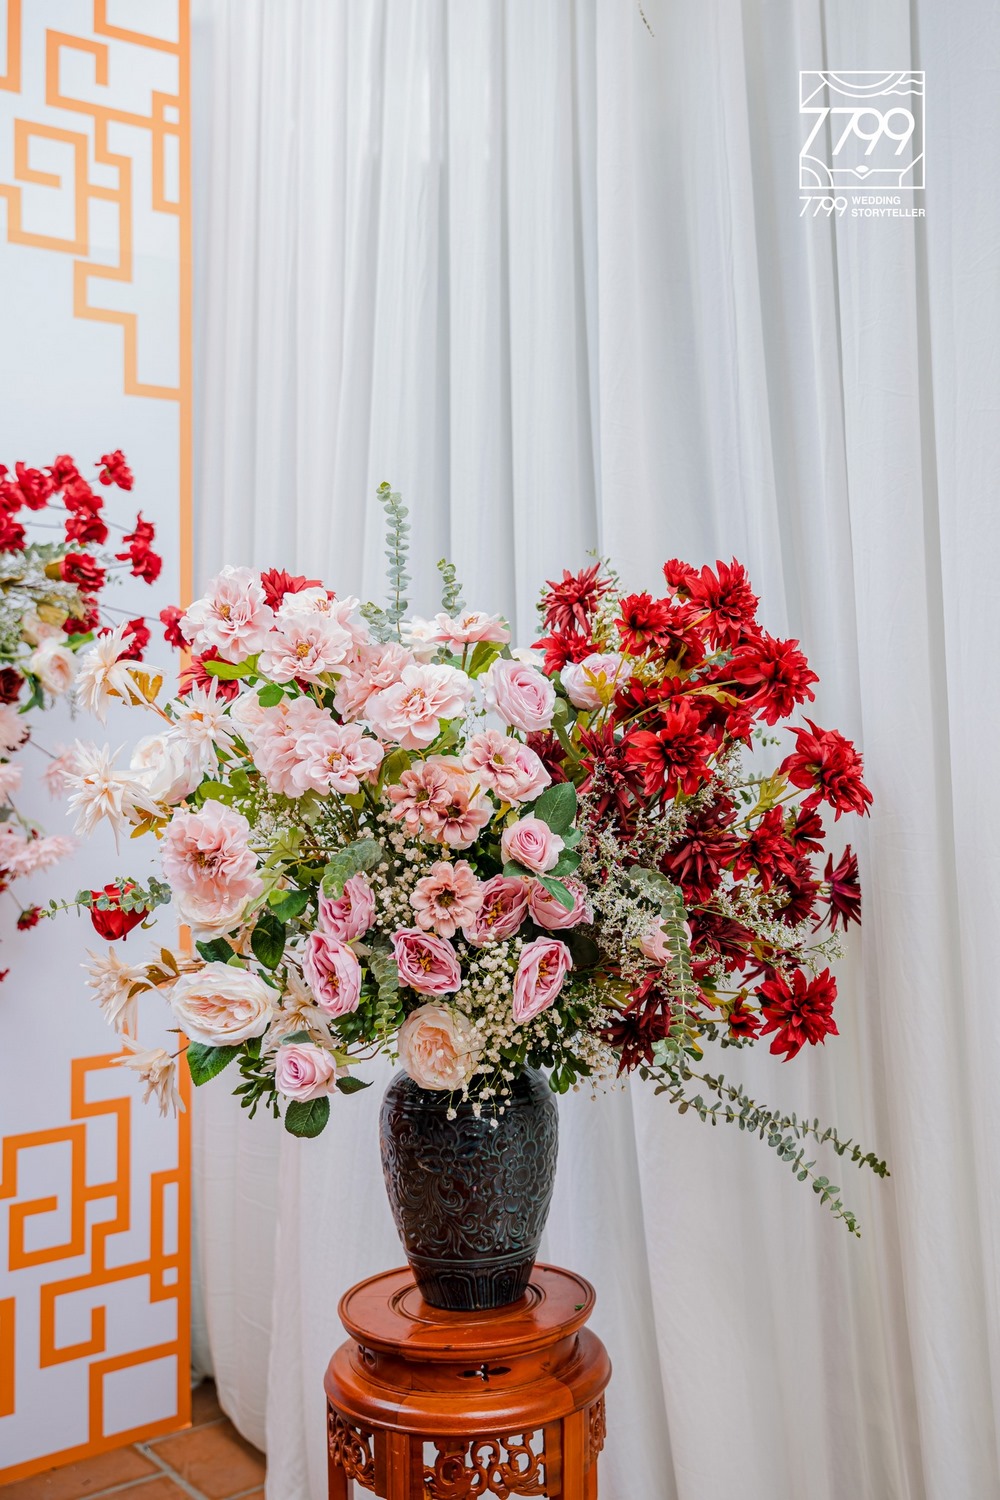 Hoa để bàn đám cưới 2021 màu đỏ truyền thống kết hợp với hiện đại